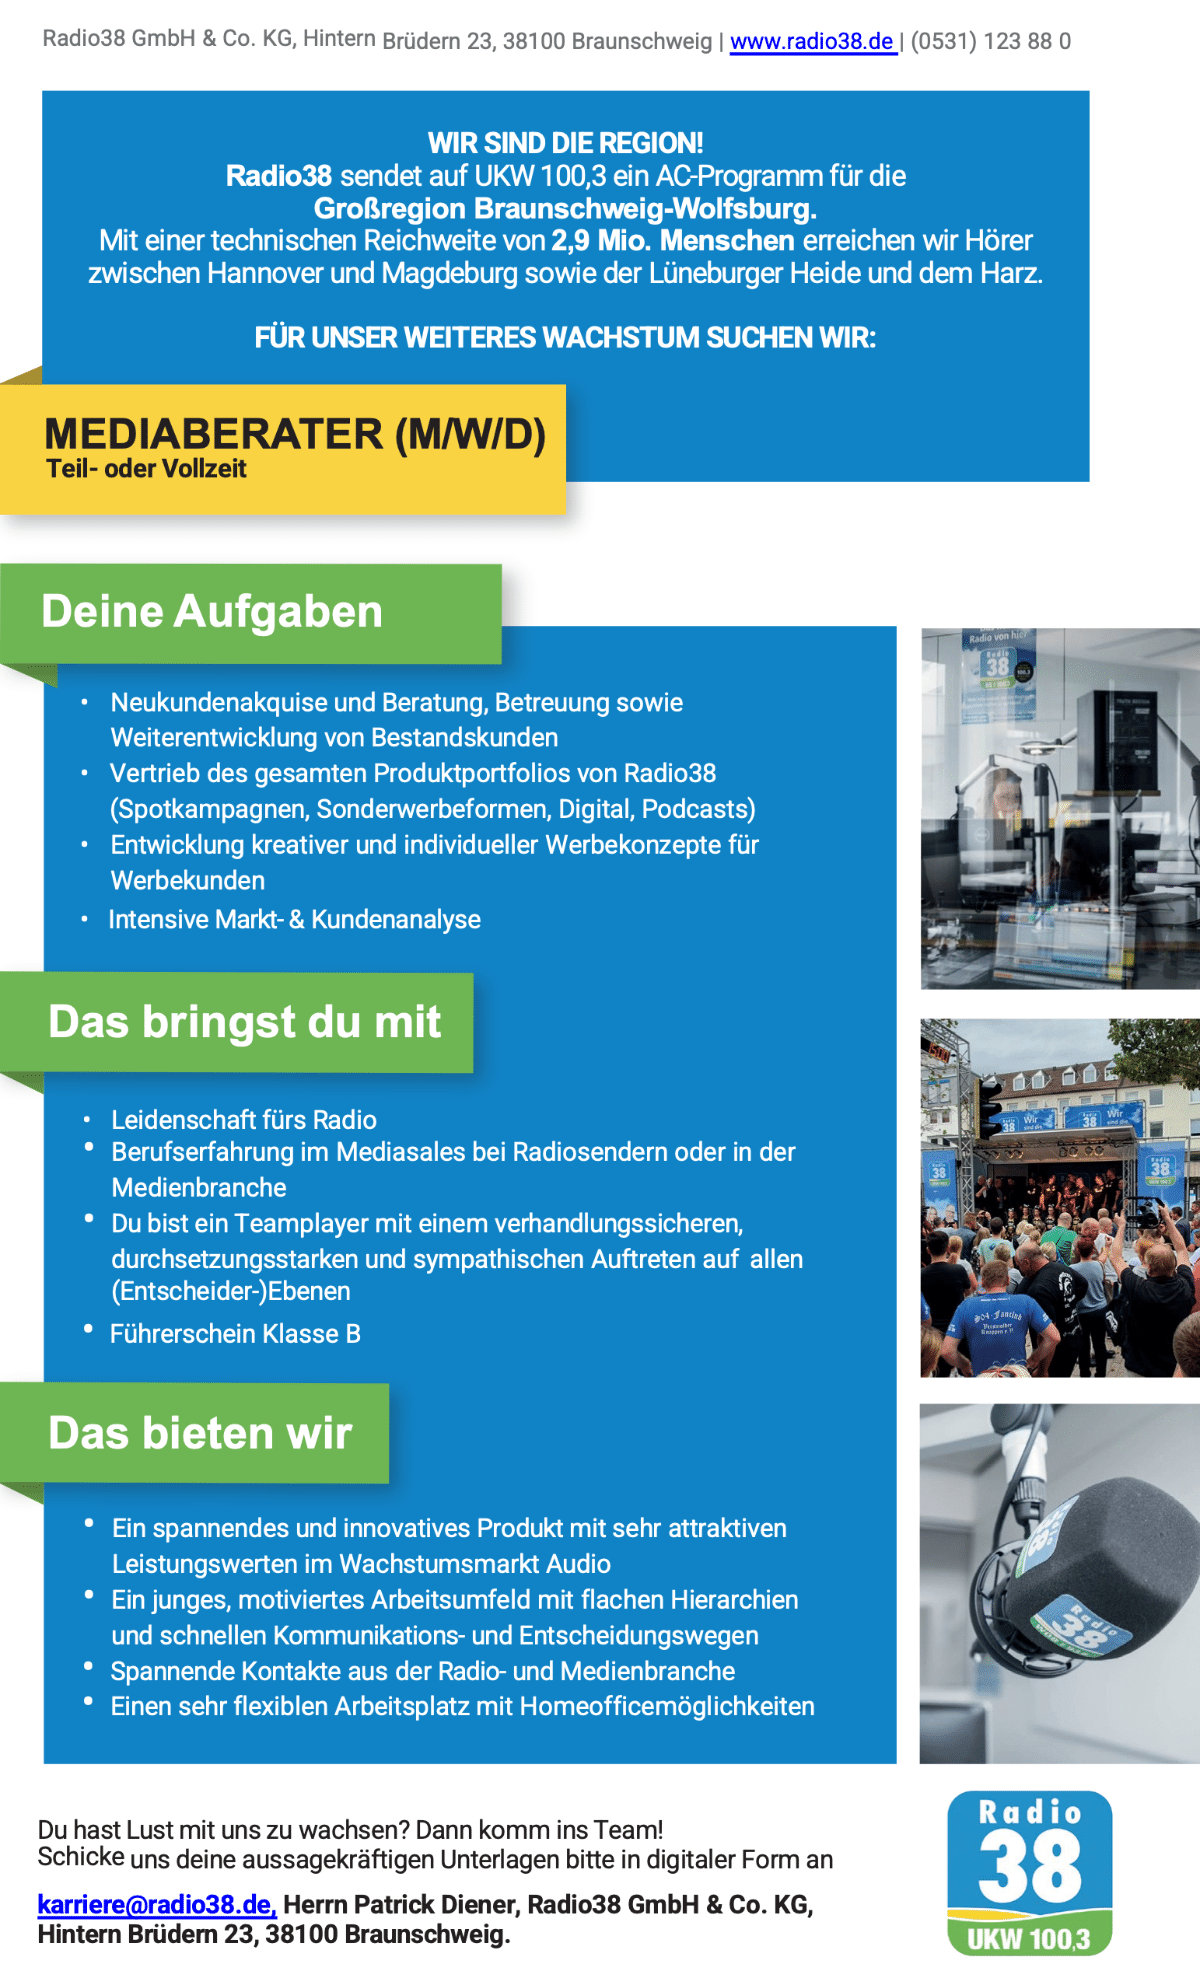 Radio38, das auf UKW 100,3 ein AC-Programm für die Großregion Braunschweig-Wolfsburg sendet und technisch 2,9 Mio. Menschen erreicht, sucht Mediaberater (m/w/d) in Teil- oder Vollzeit. 